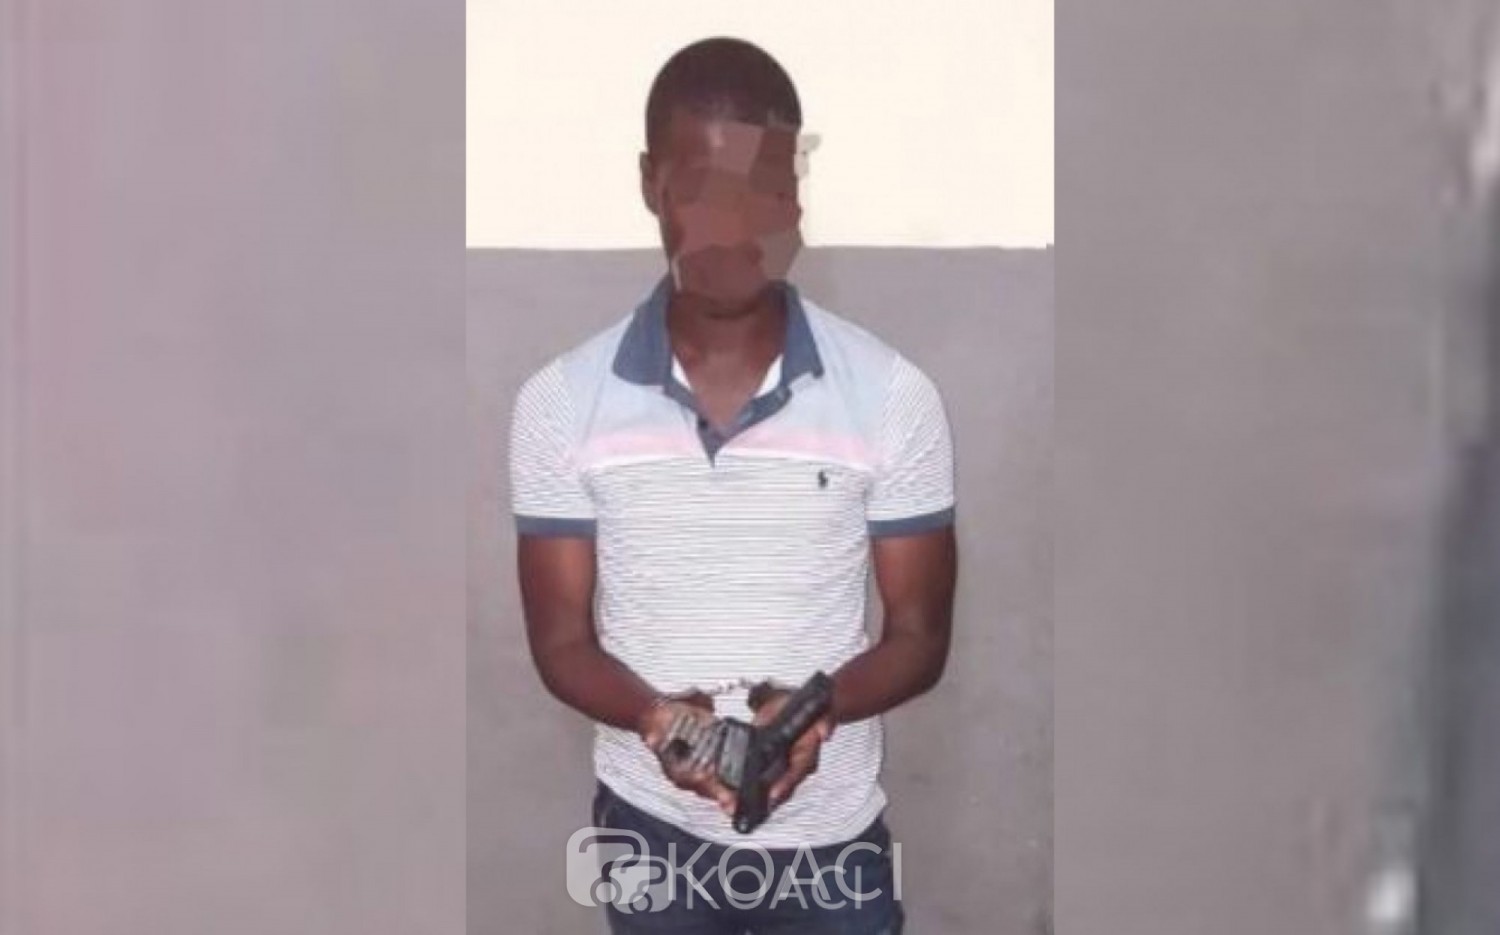 Côte d'Ivoire : Bouaké, un faux gendarme interpellé en possession d'une arme par la police criminelle